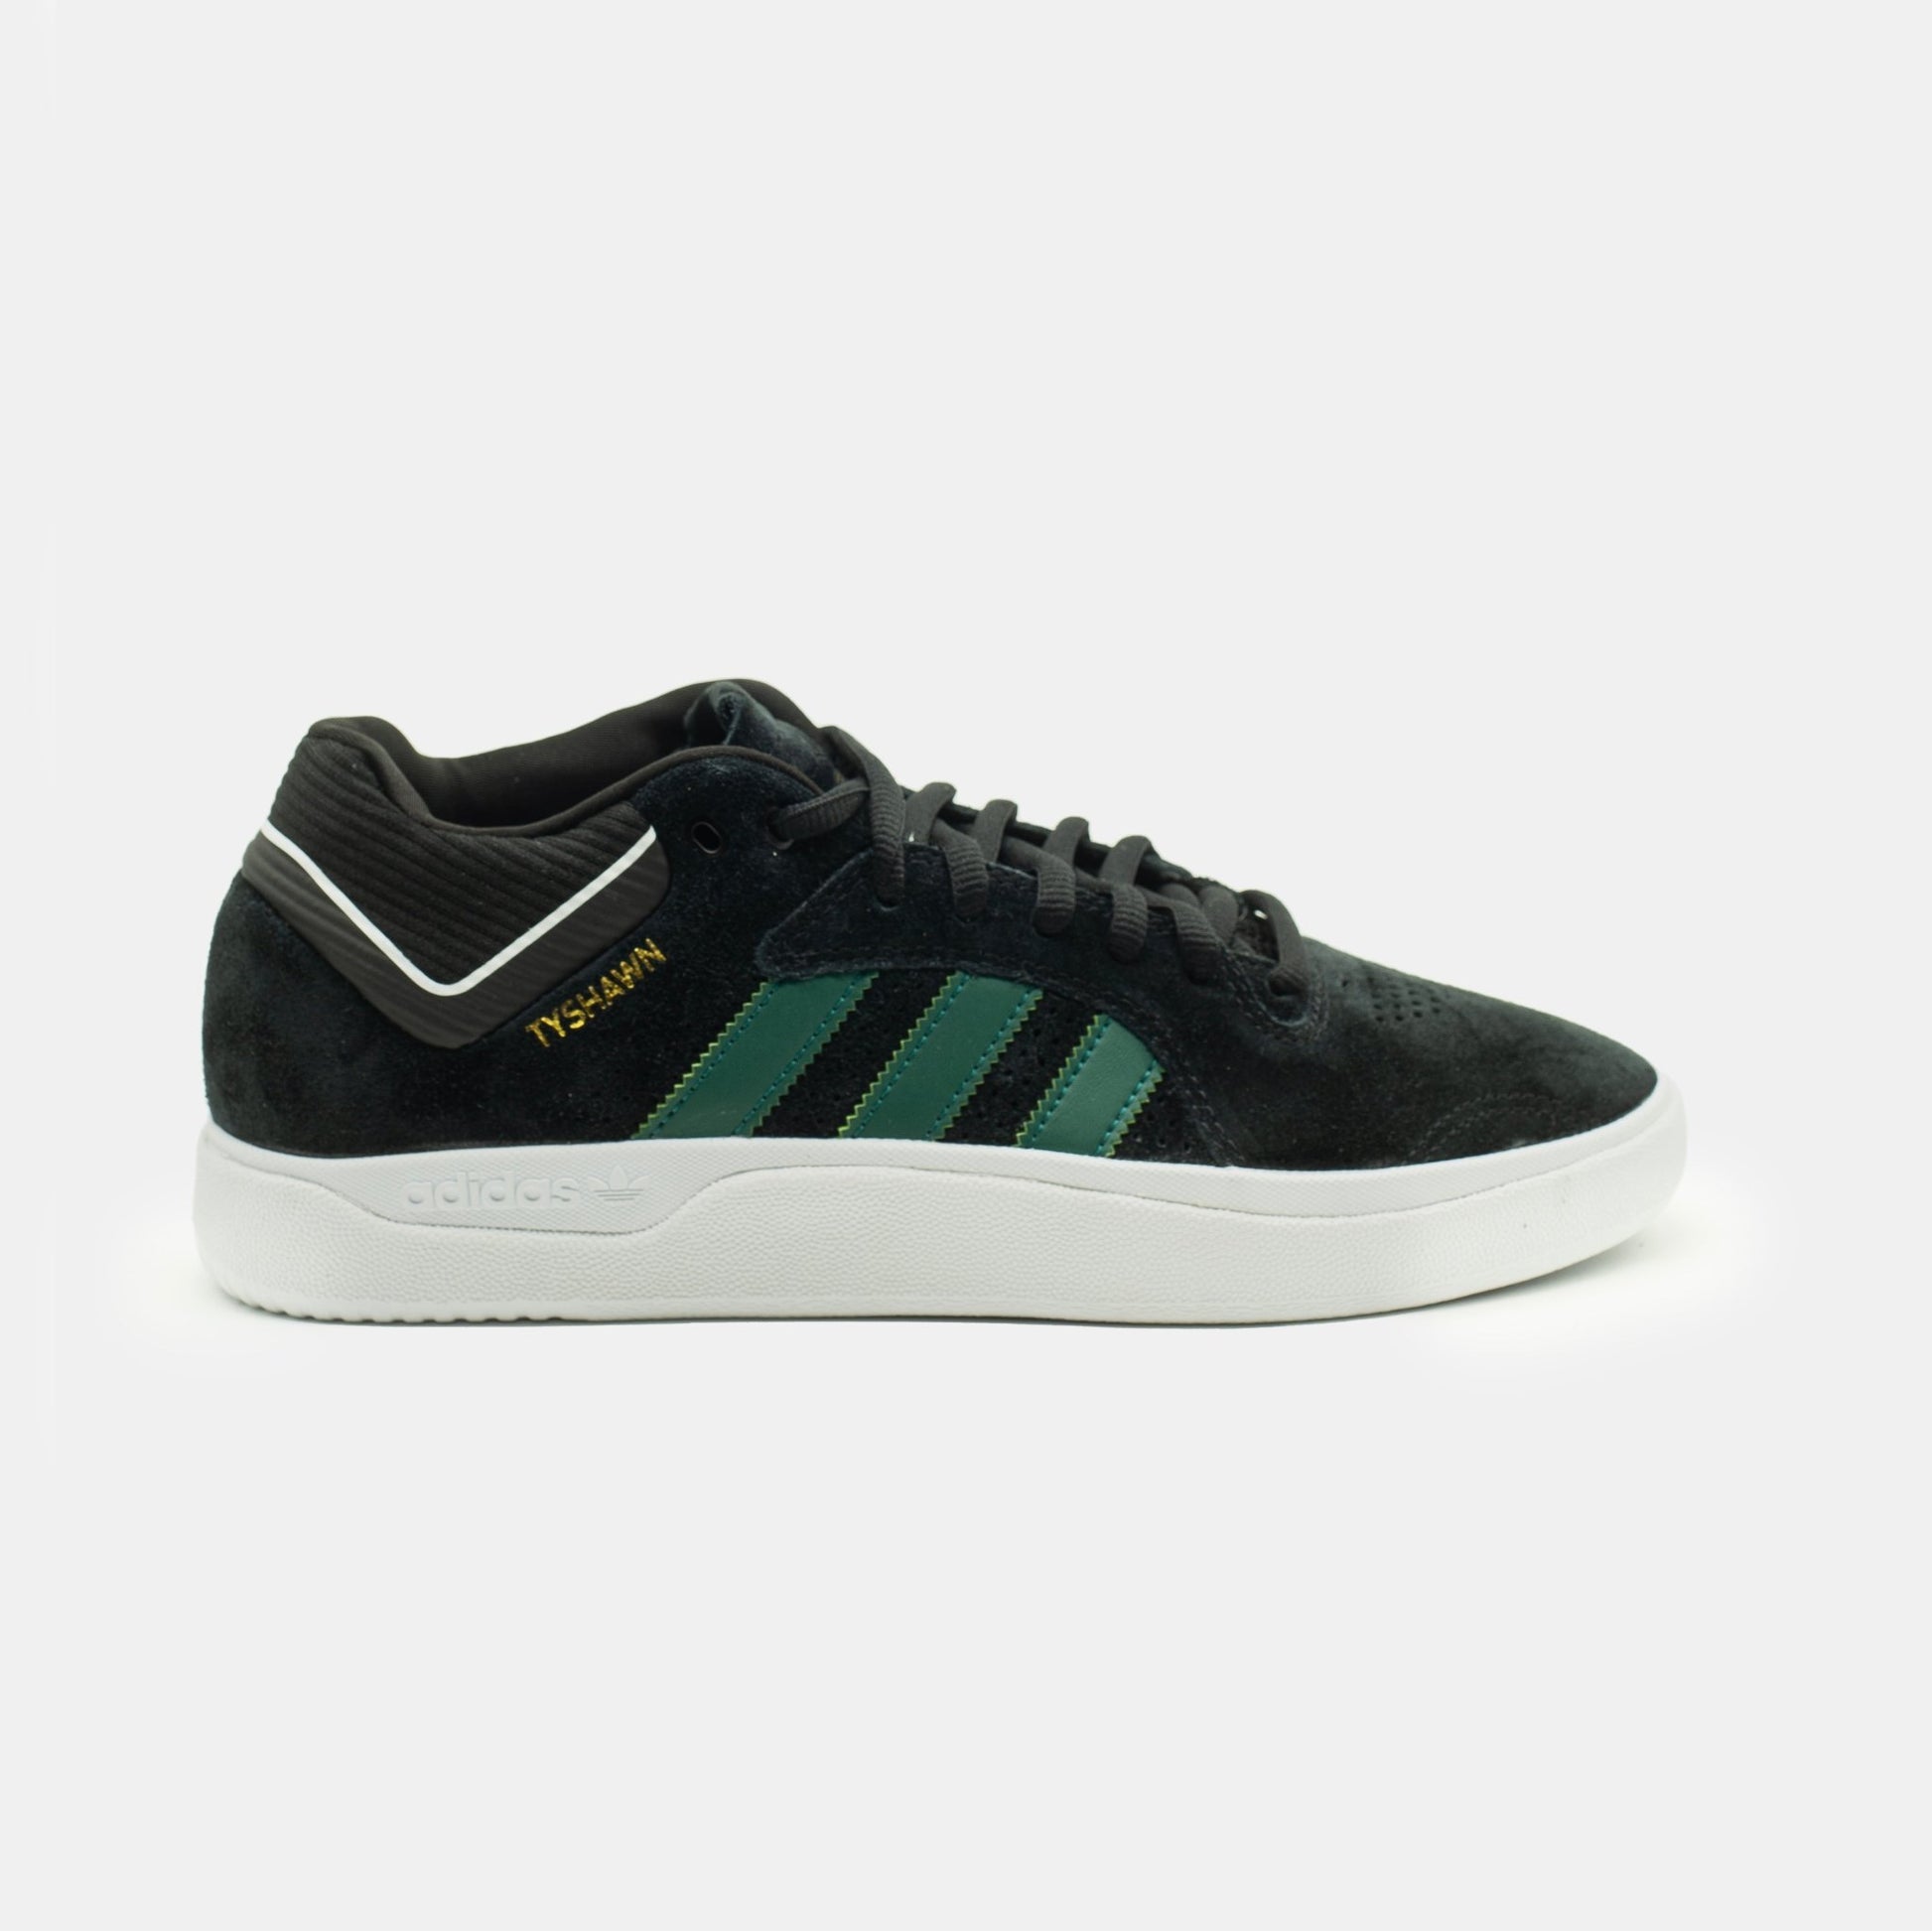 Adidas - Tyshawn (Black/Green/White) - Parliamentskateshop